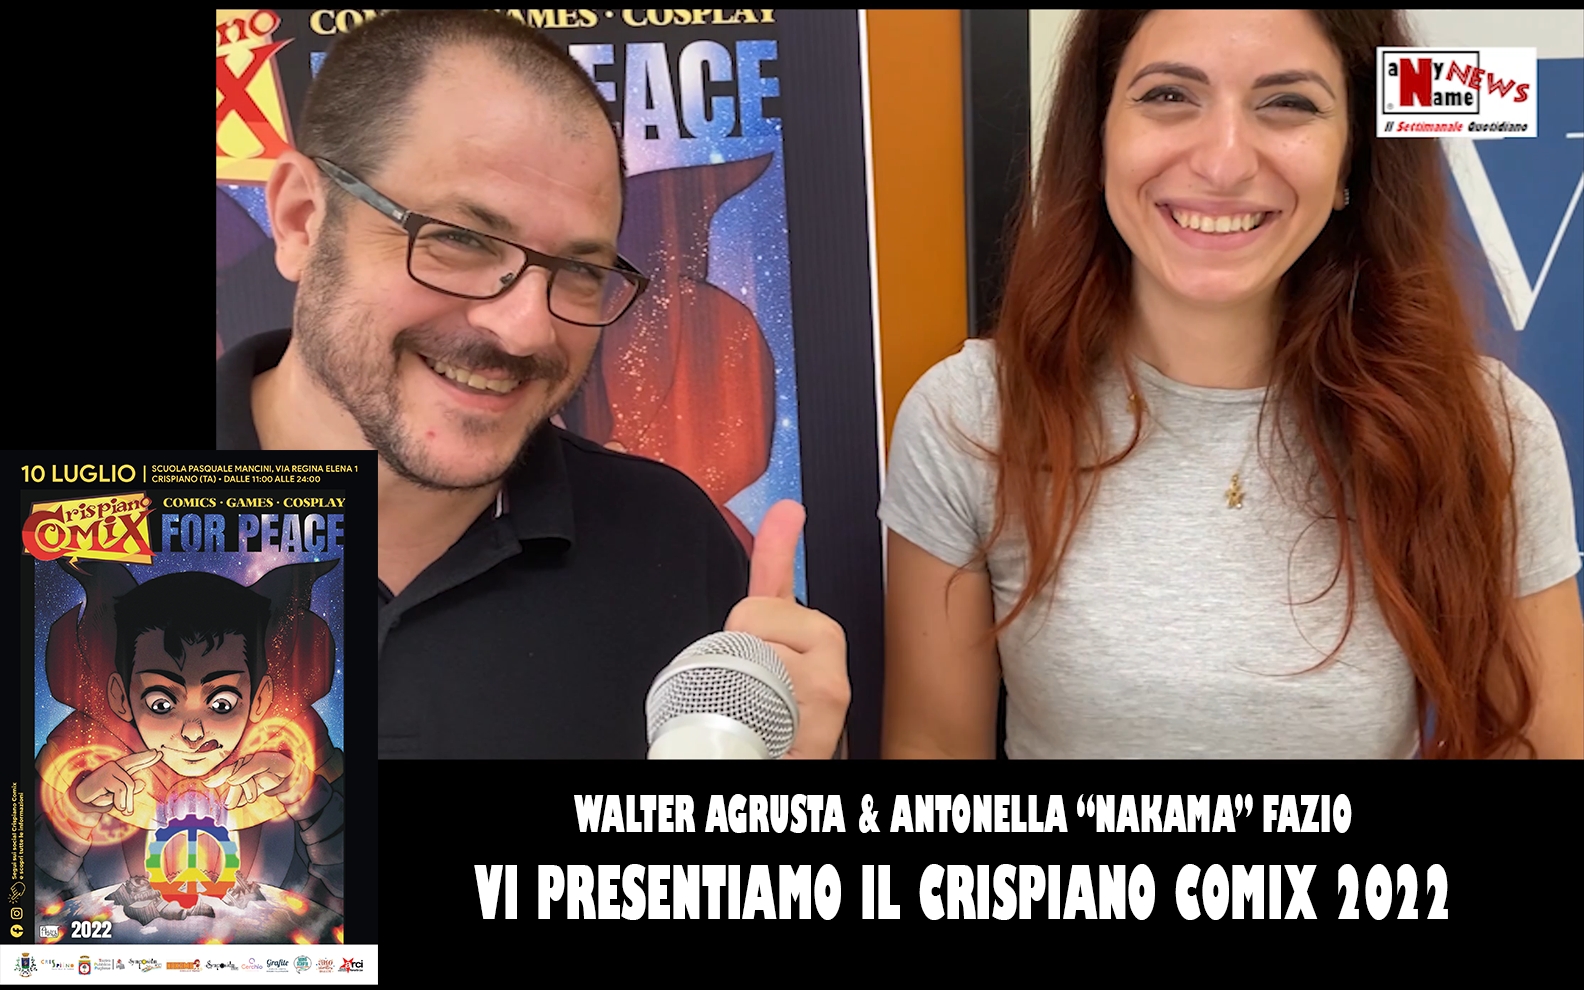 Walter Agrusta & Antonella “Nakama” Fazio – Vi presentiamo il CRISPIANO COMIX 2022